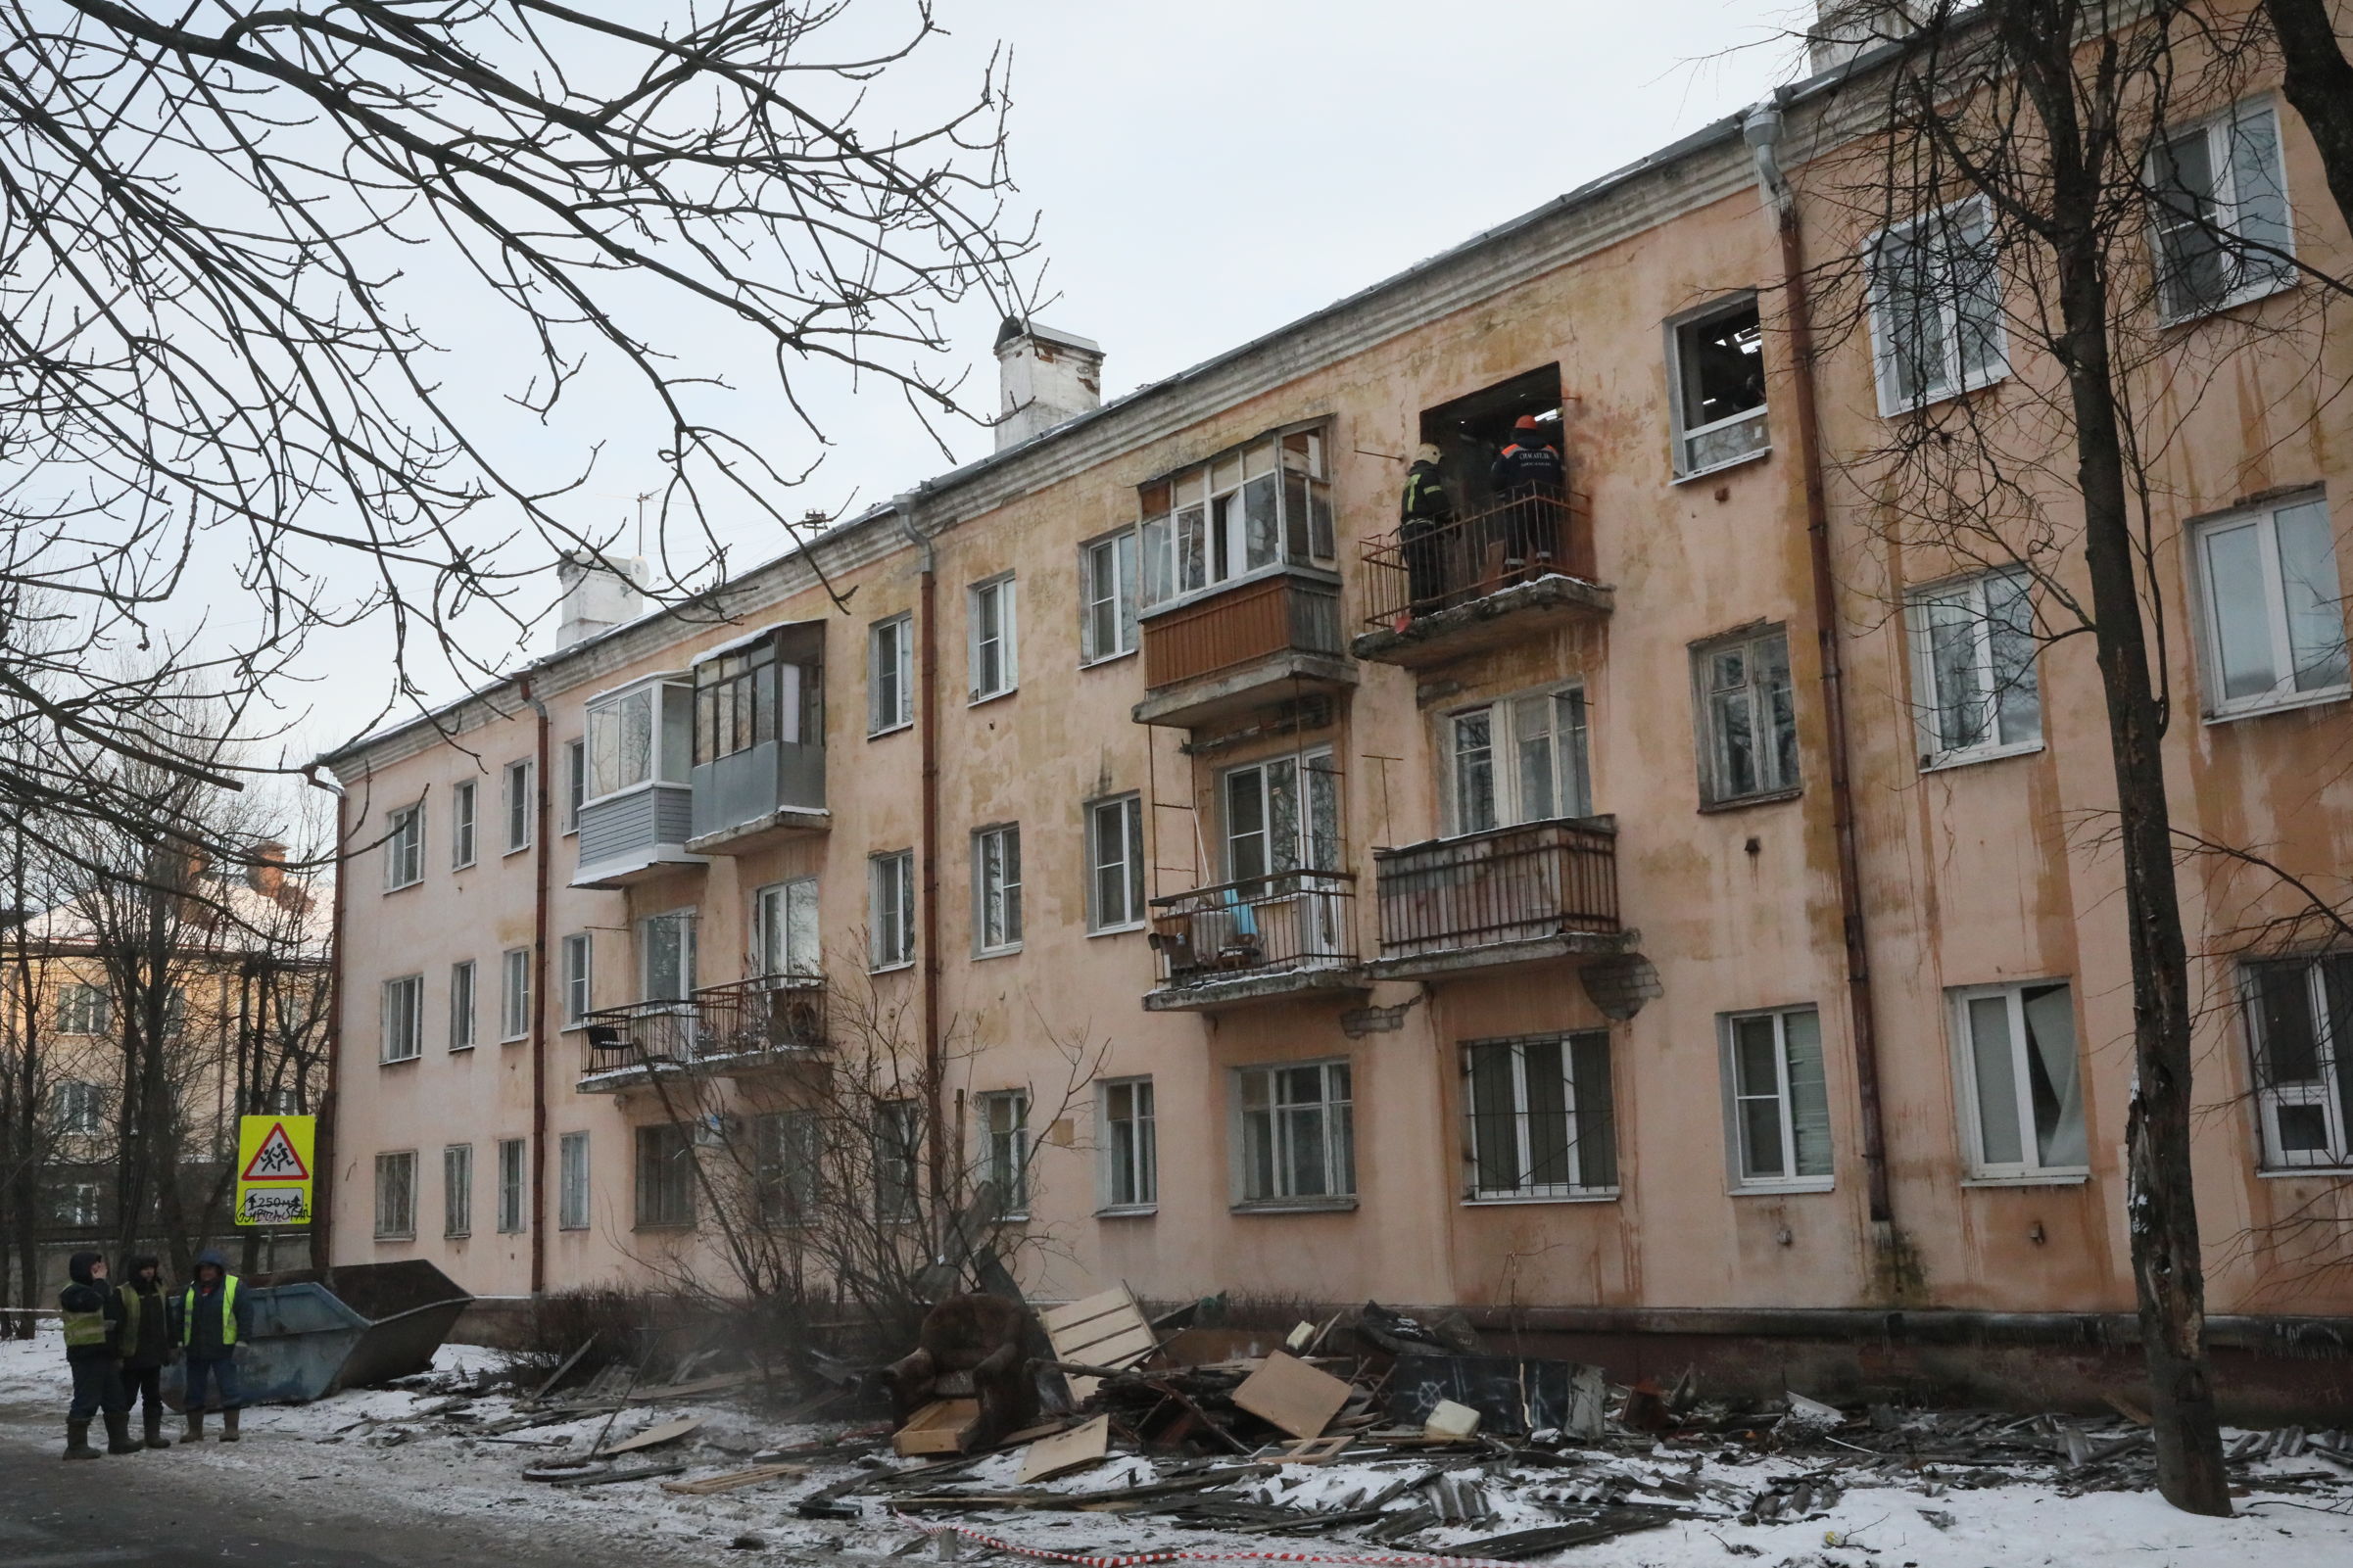 Появились фото и видео из квартиры в Ярославле, где взорвался газ